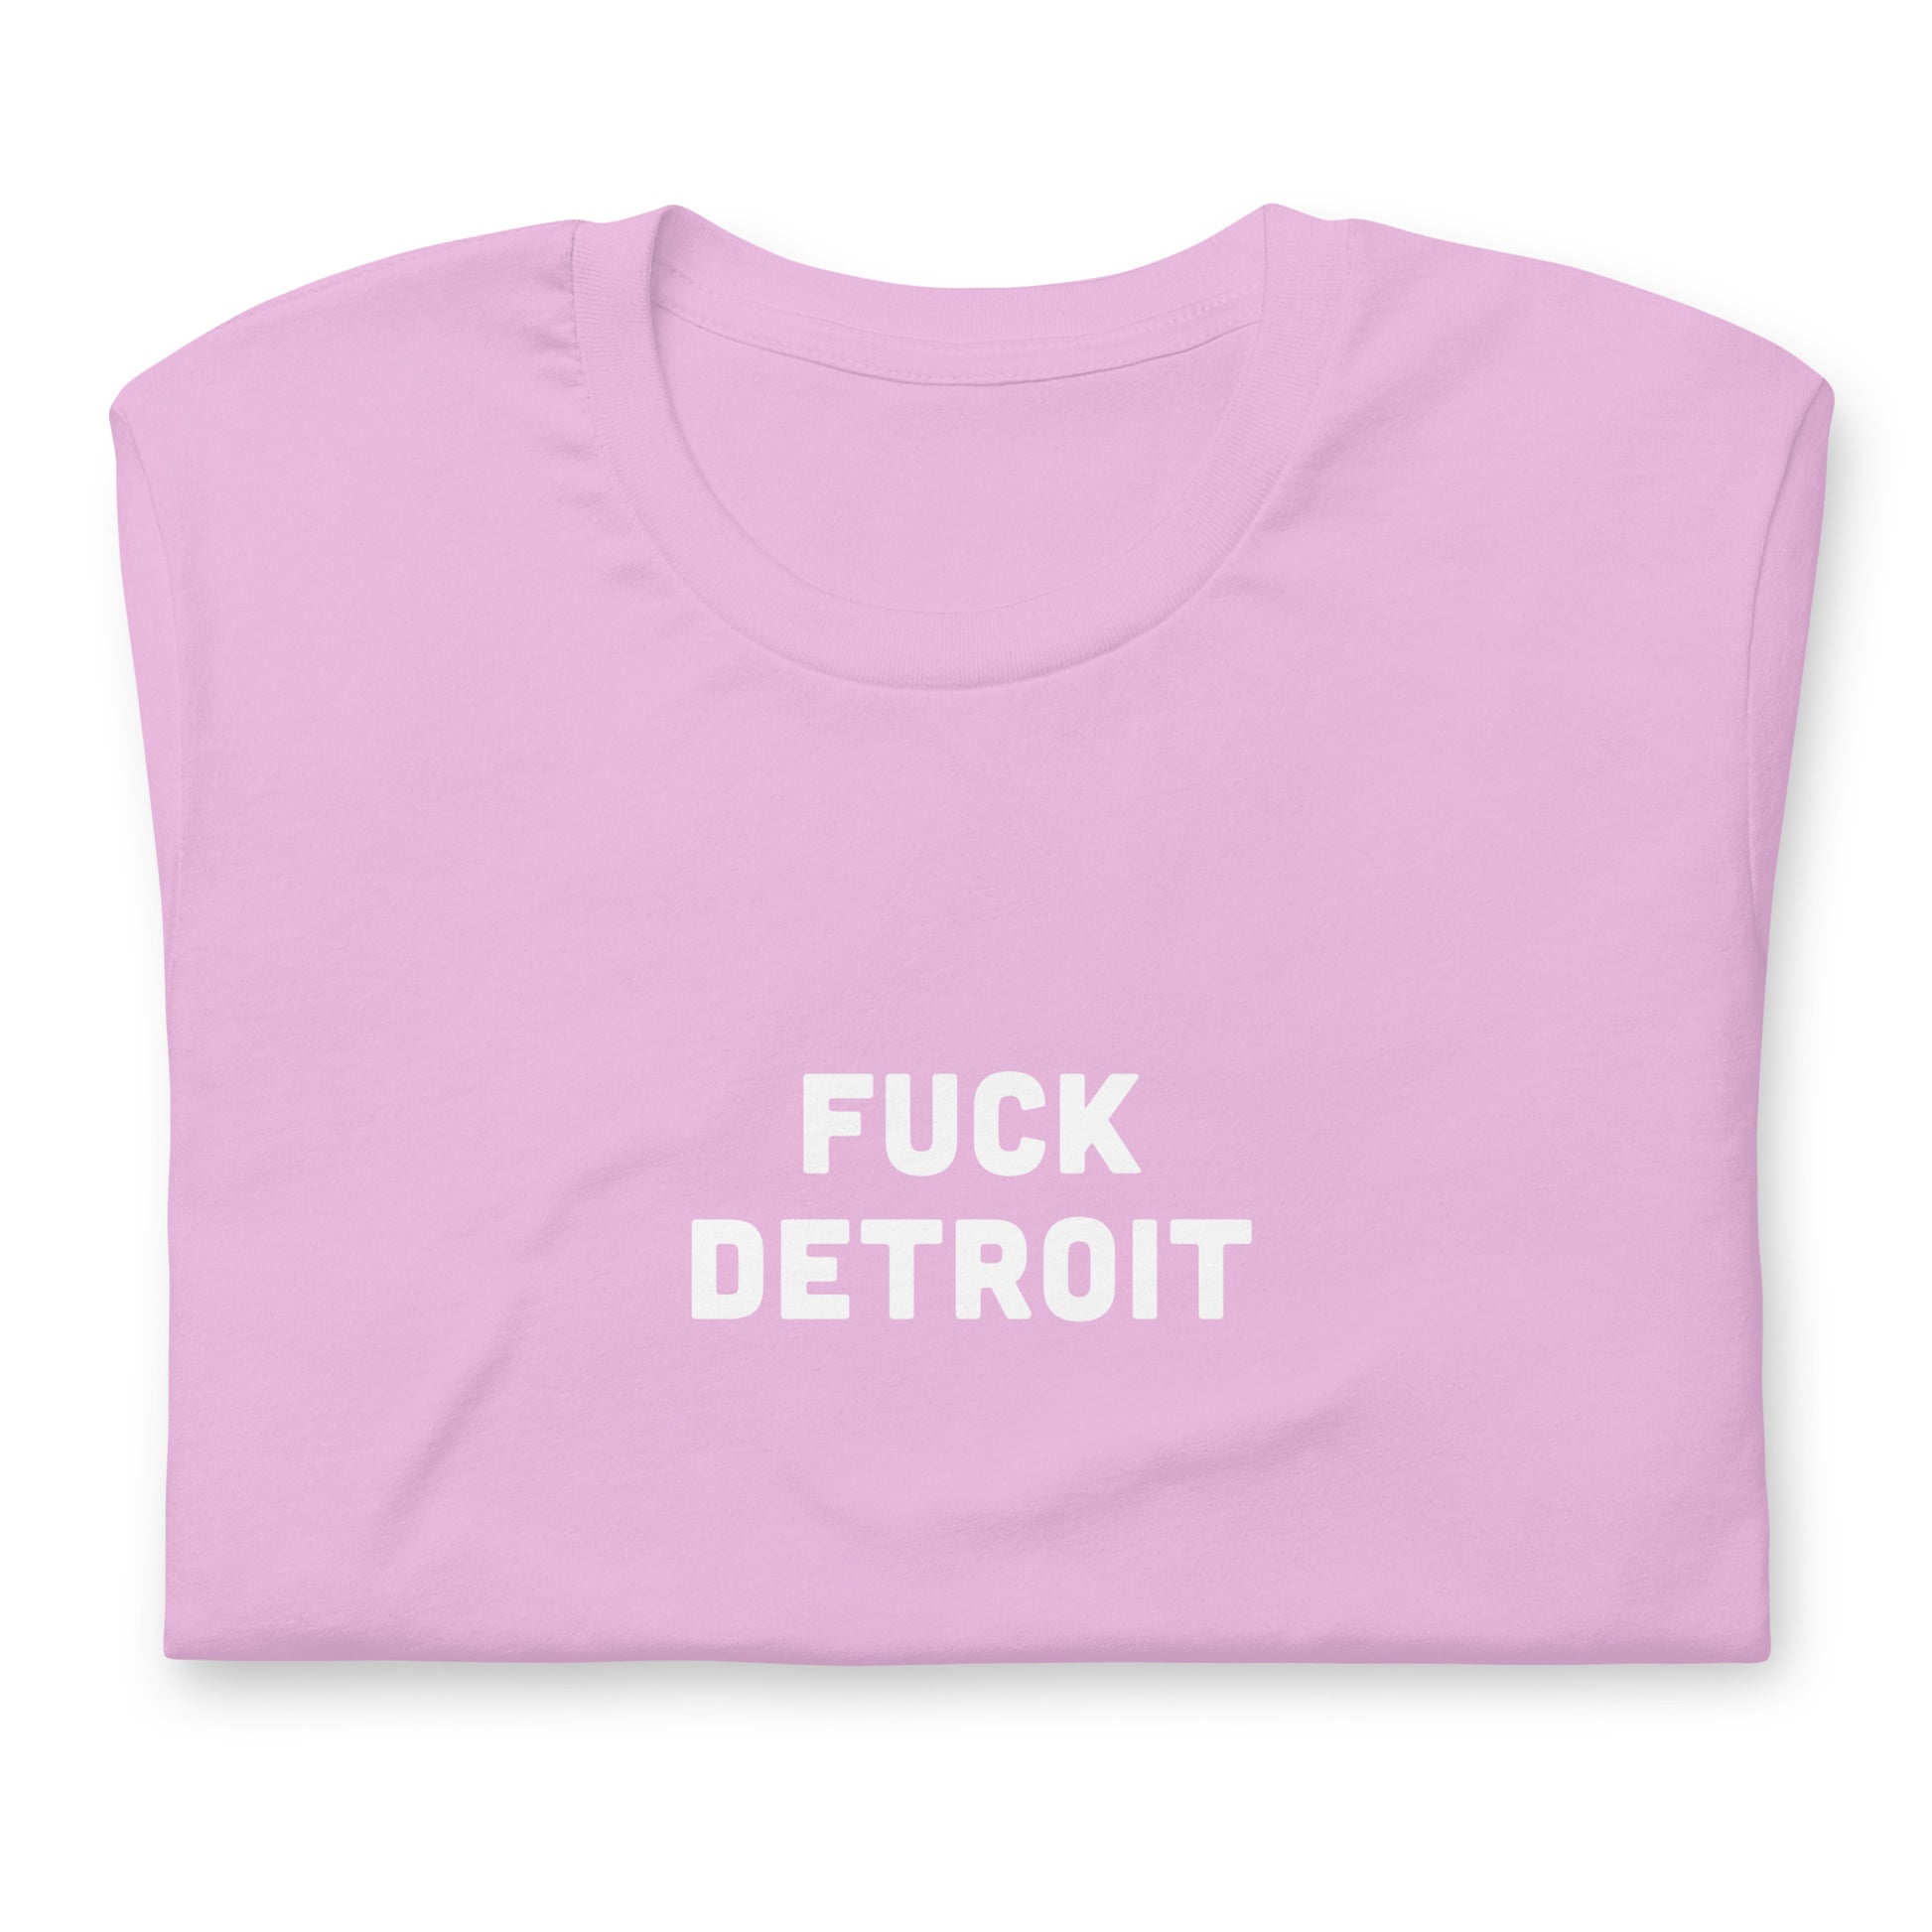 Fuck Detroit T-Shirt Size 2XL Color Forest